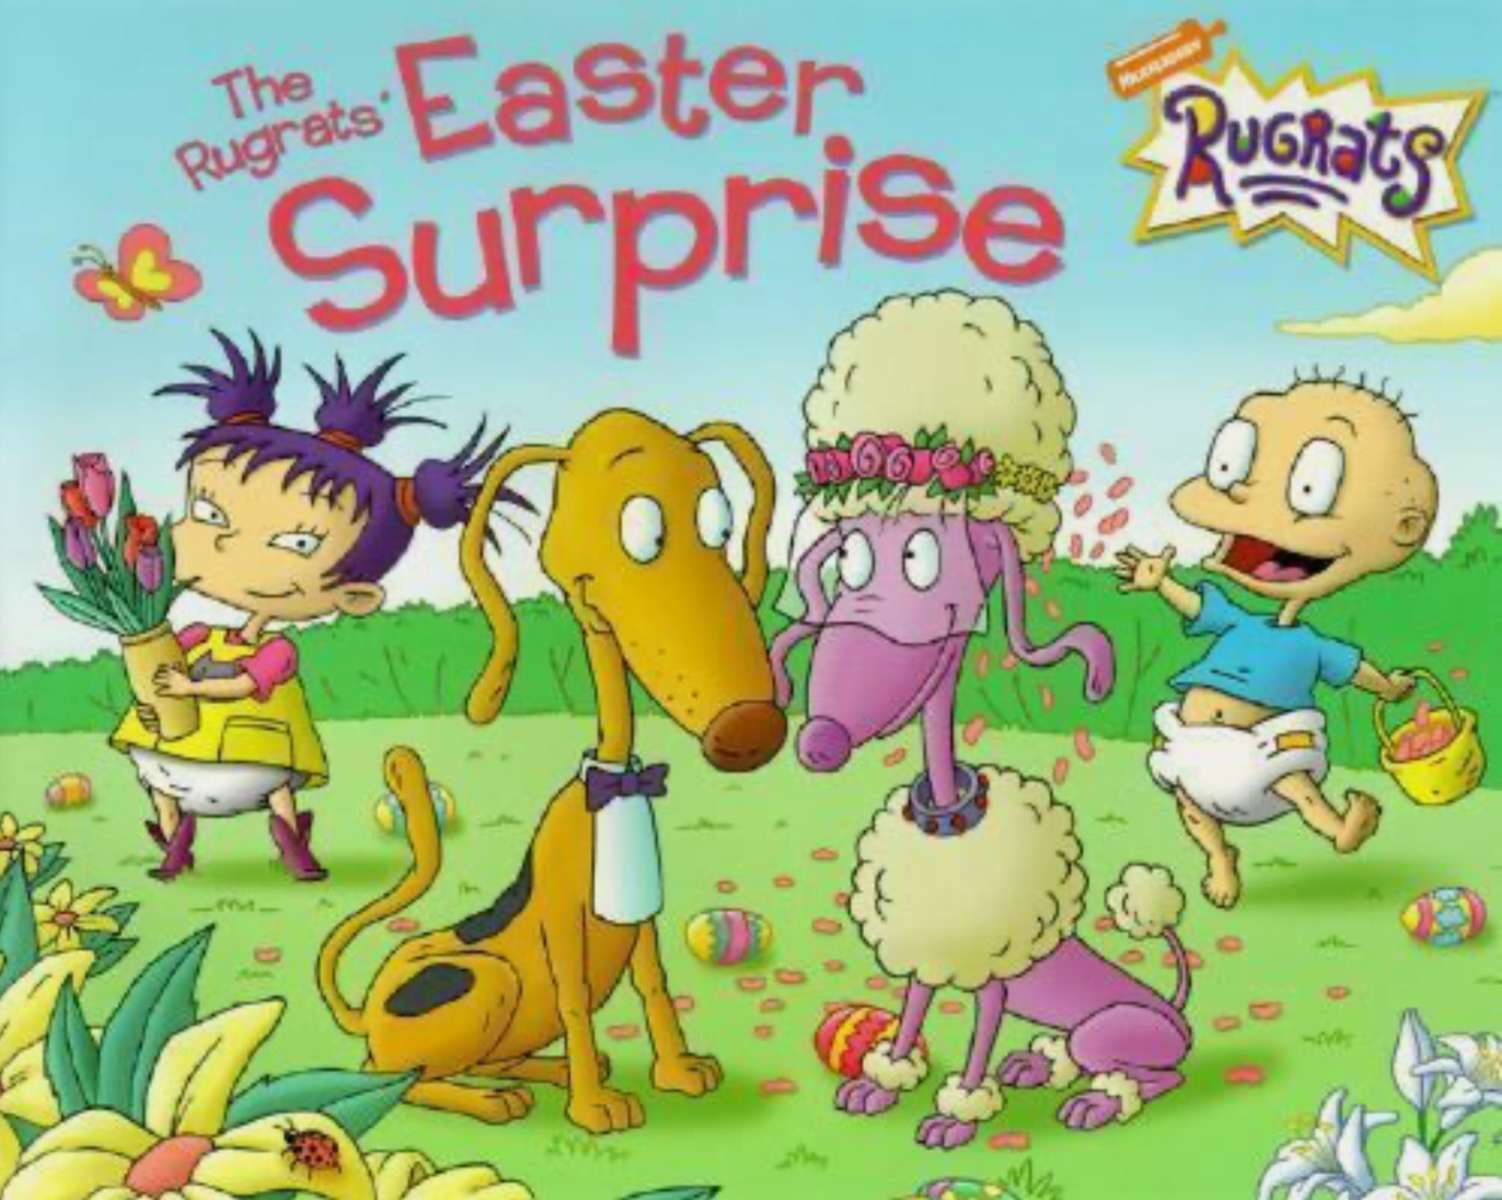 Rugrats' Velikonoční překvapení (brožovaná kniha) skládačky online